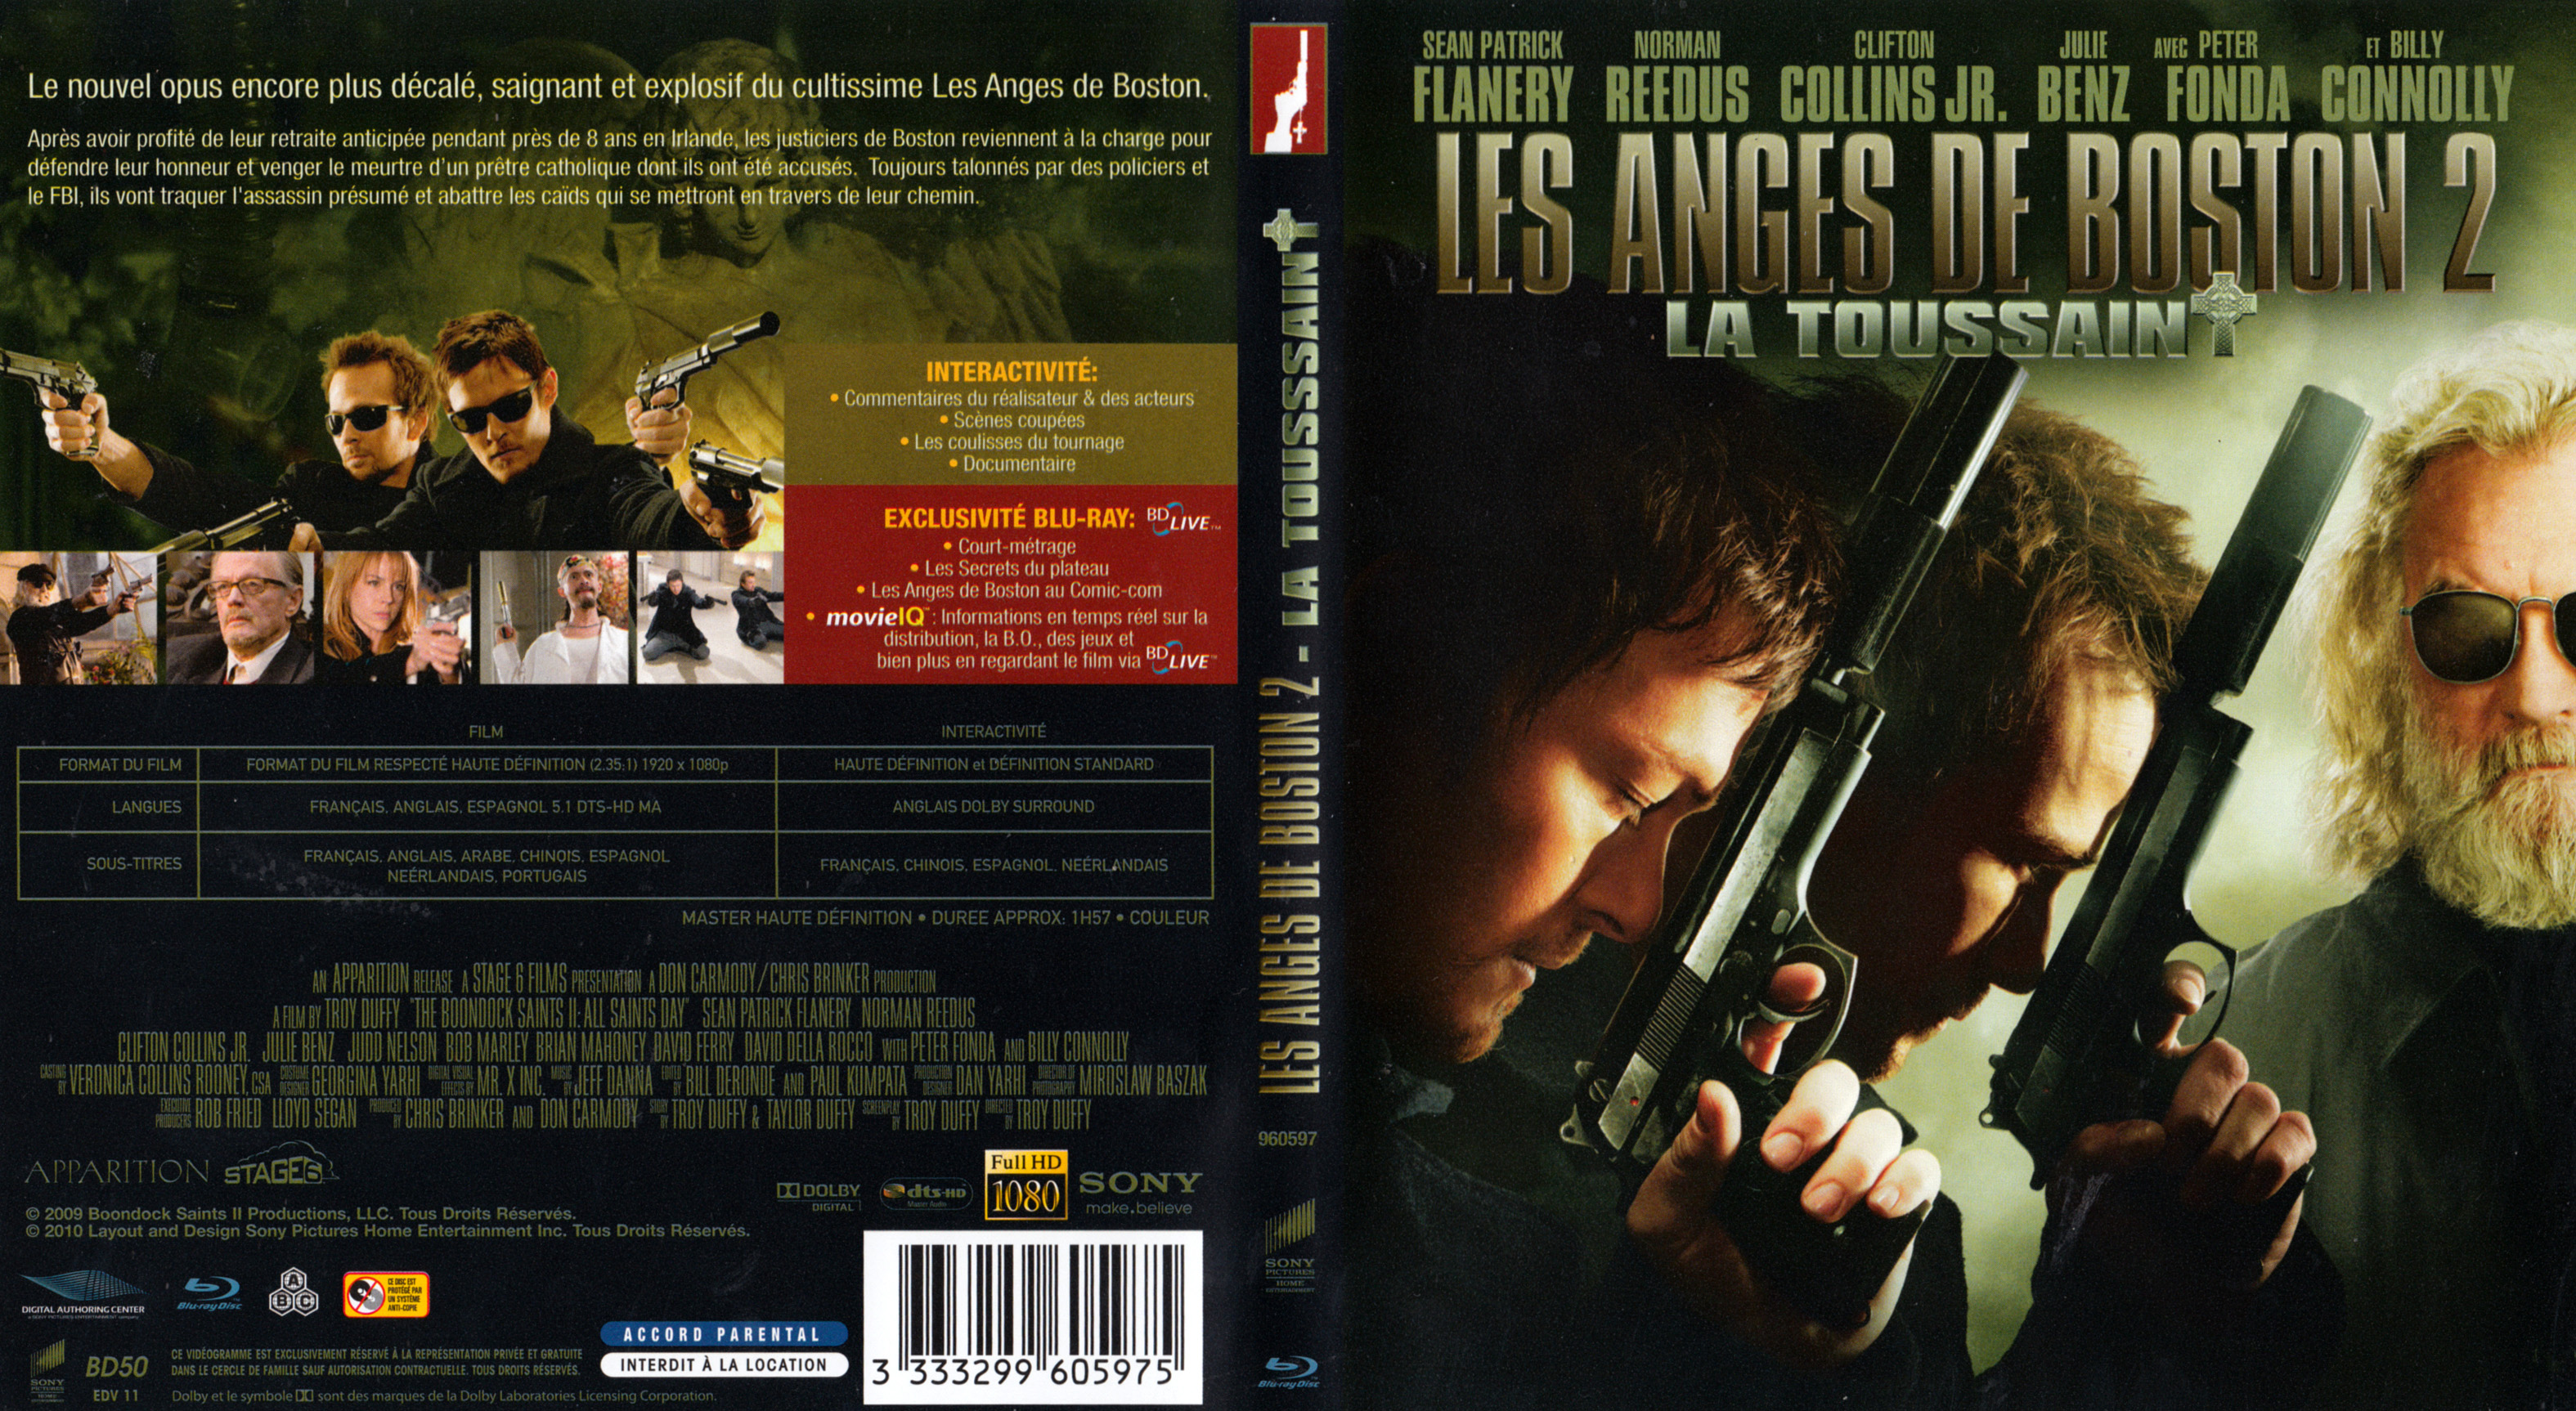 Jaquette DVD Les anges de Boston 2 (BLU-RAY)